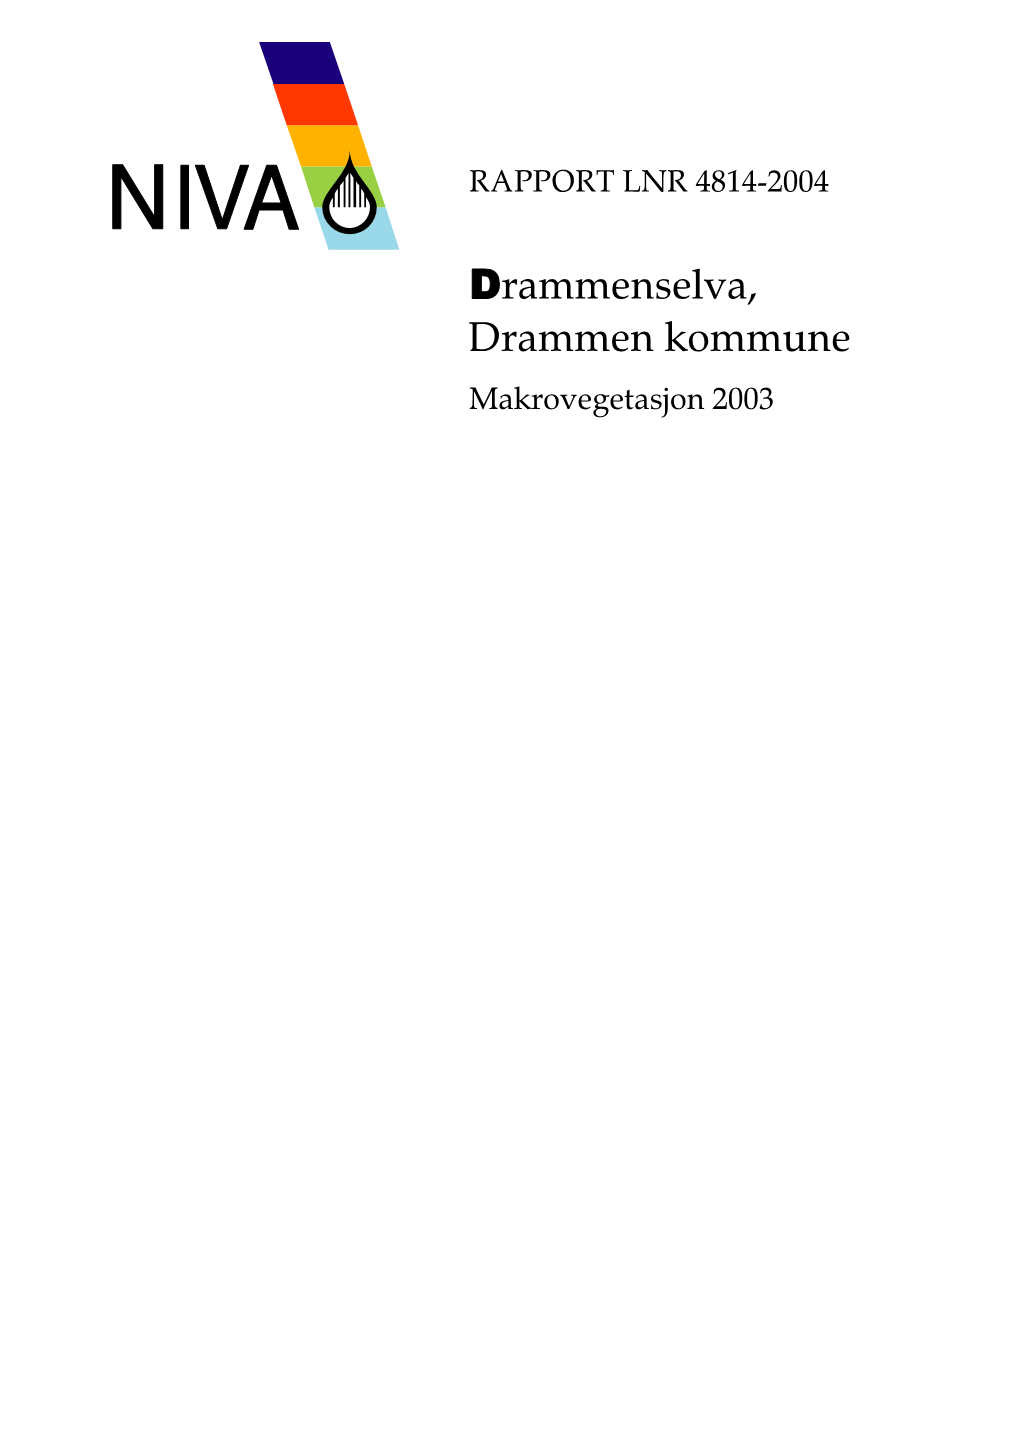 Drammenselva, Drammen Kommune Makrovegetasjon 2003 Drammenselva, Drammen Kommune Makrovegetasjon 2003 NIVA 4814-2004